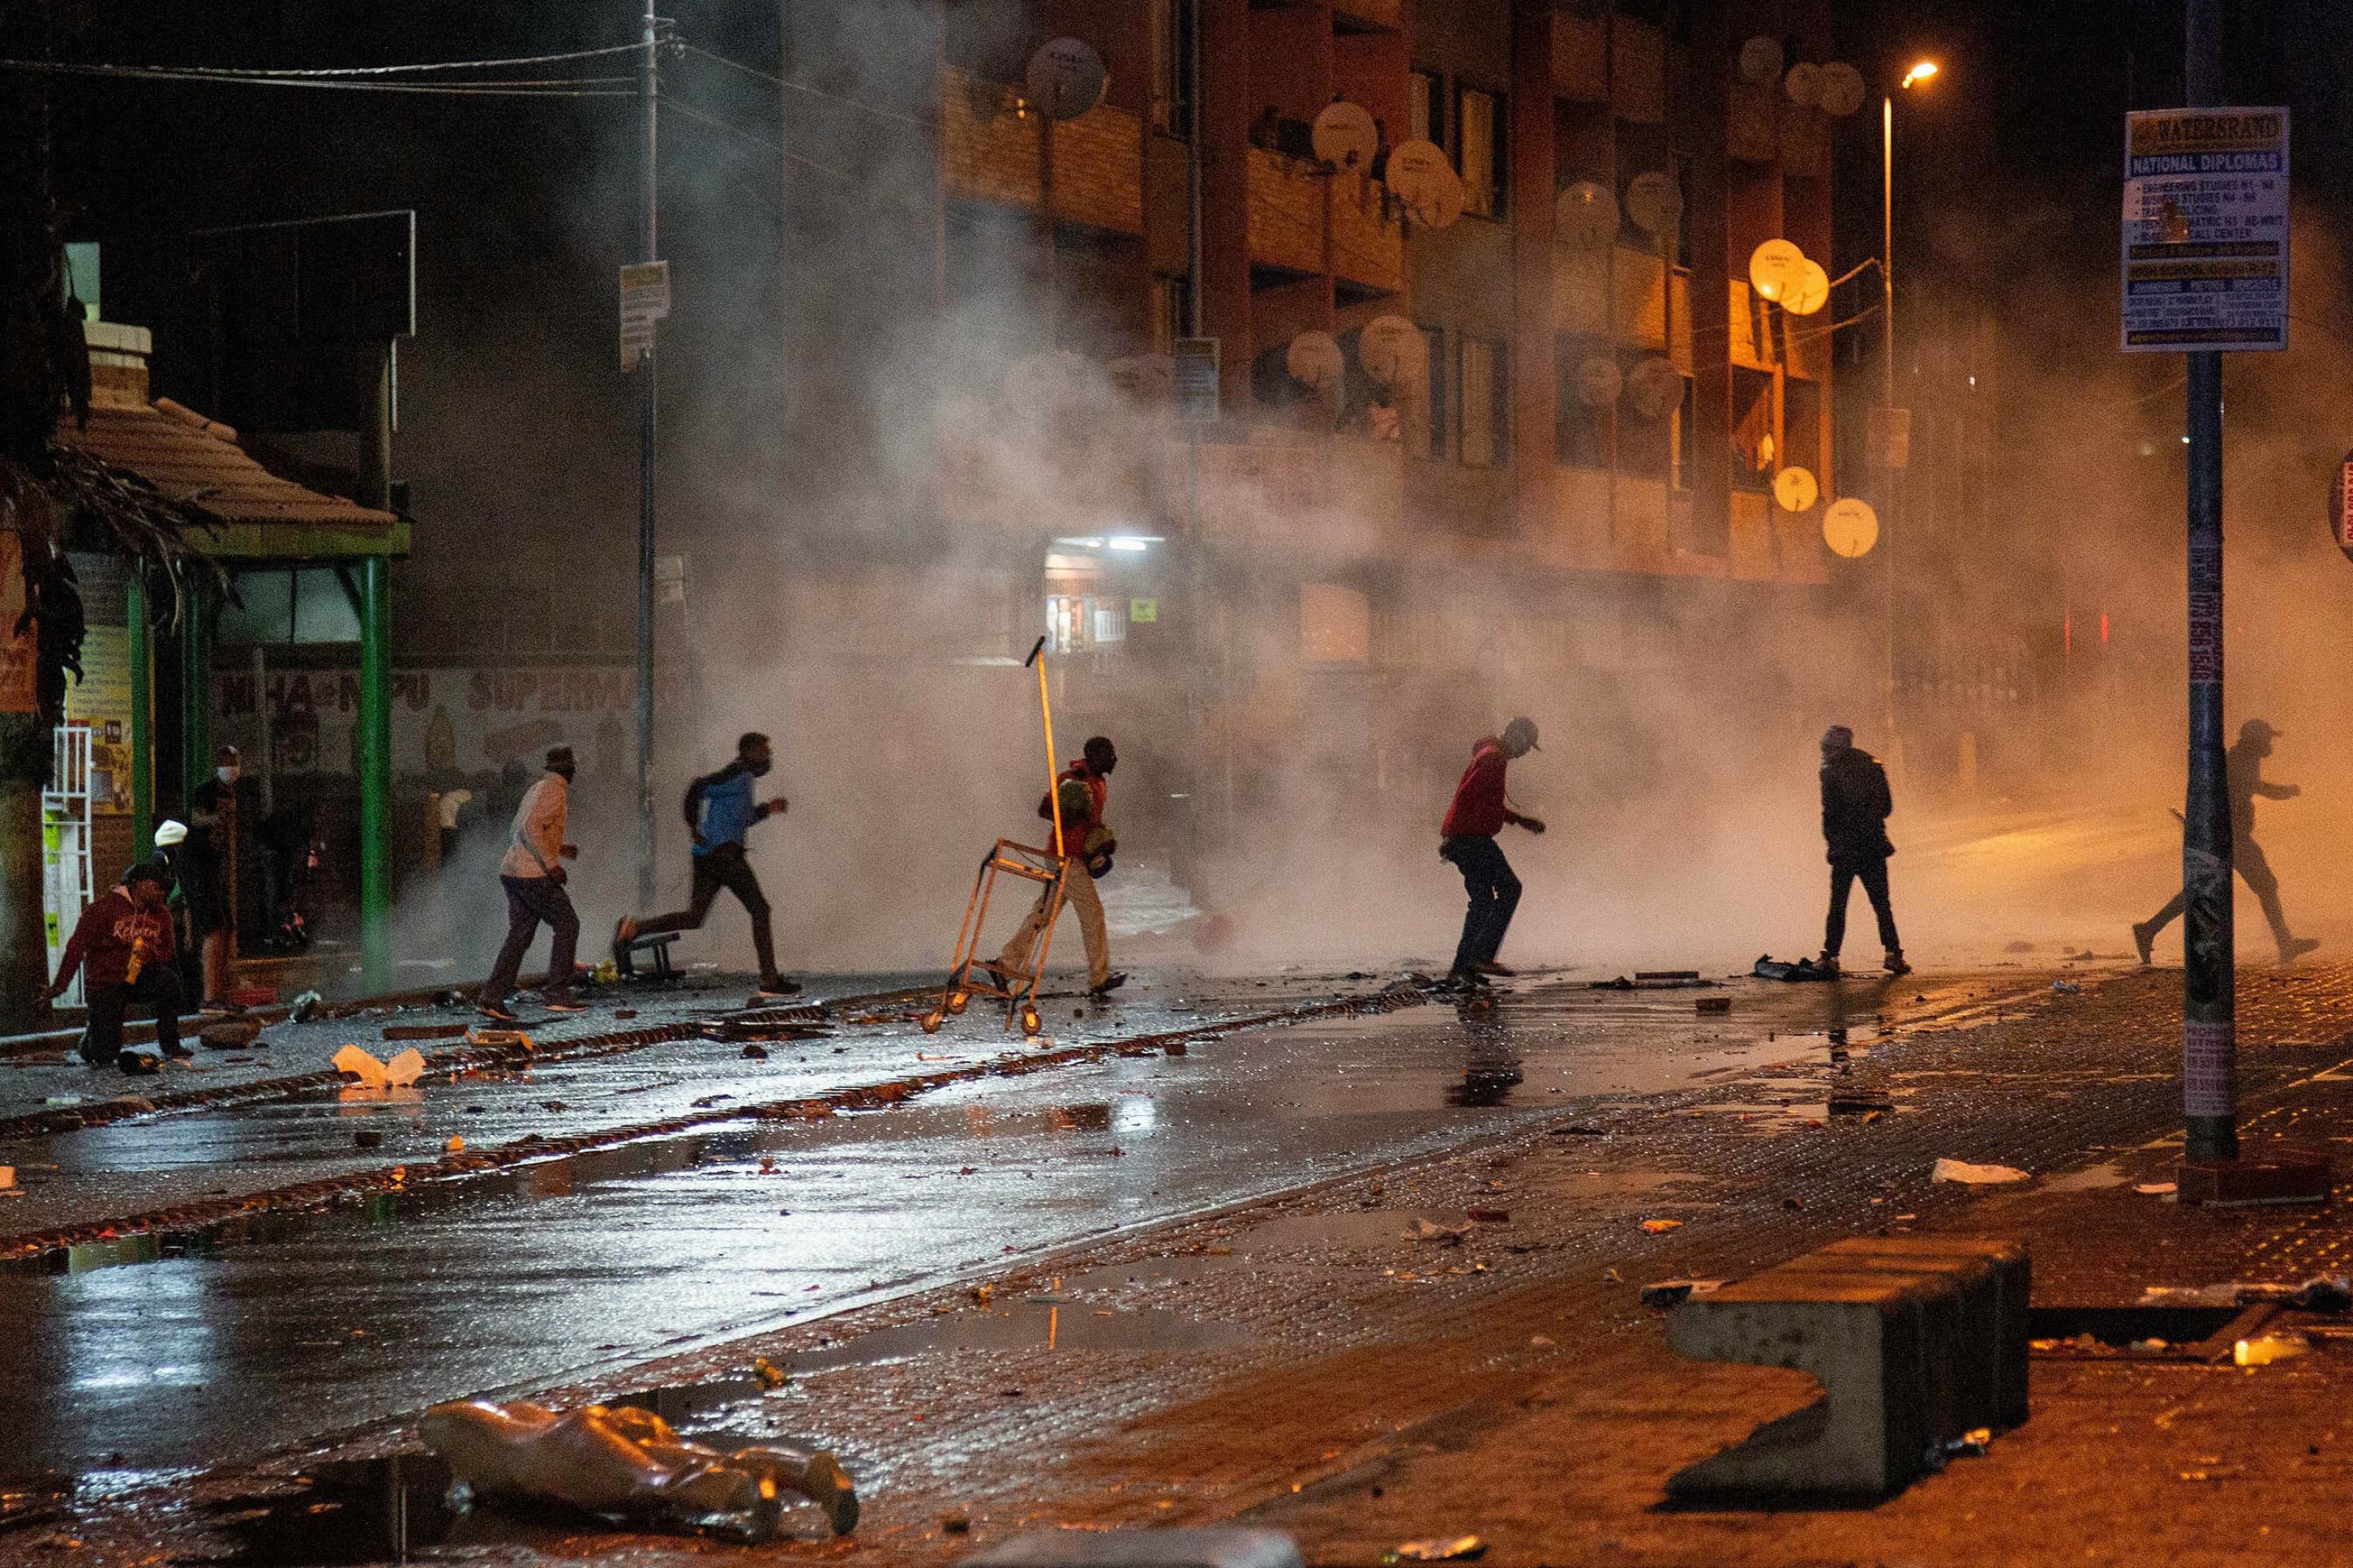 Es ist dunkel, rennende Männer während der Ausschreitungen auf der Straße zu sehen, die Polizei setzt Tränengas ein.